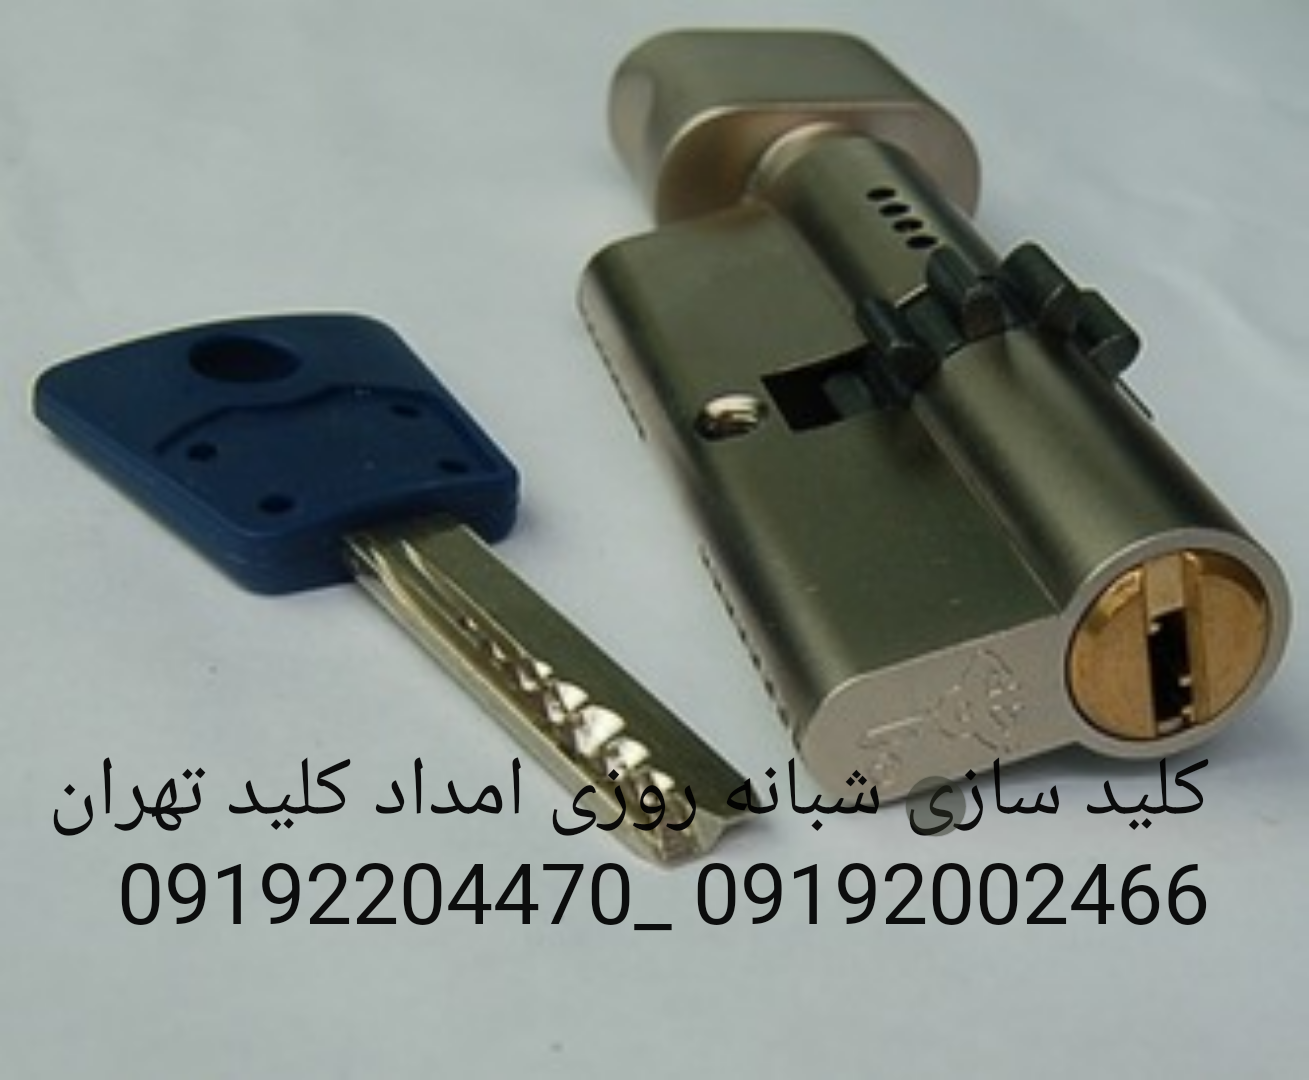 کلید سازی شبانه روزی امداد کلید تهران 09192002466 